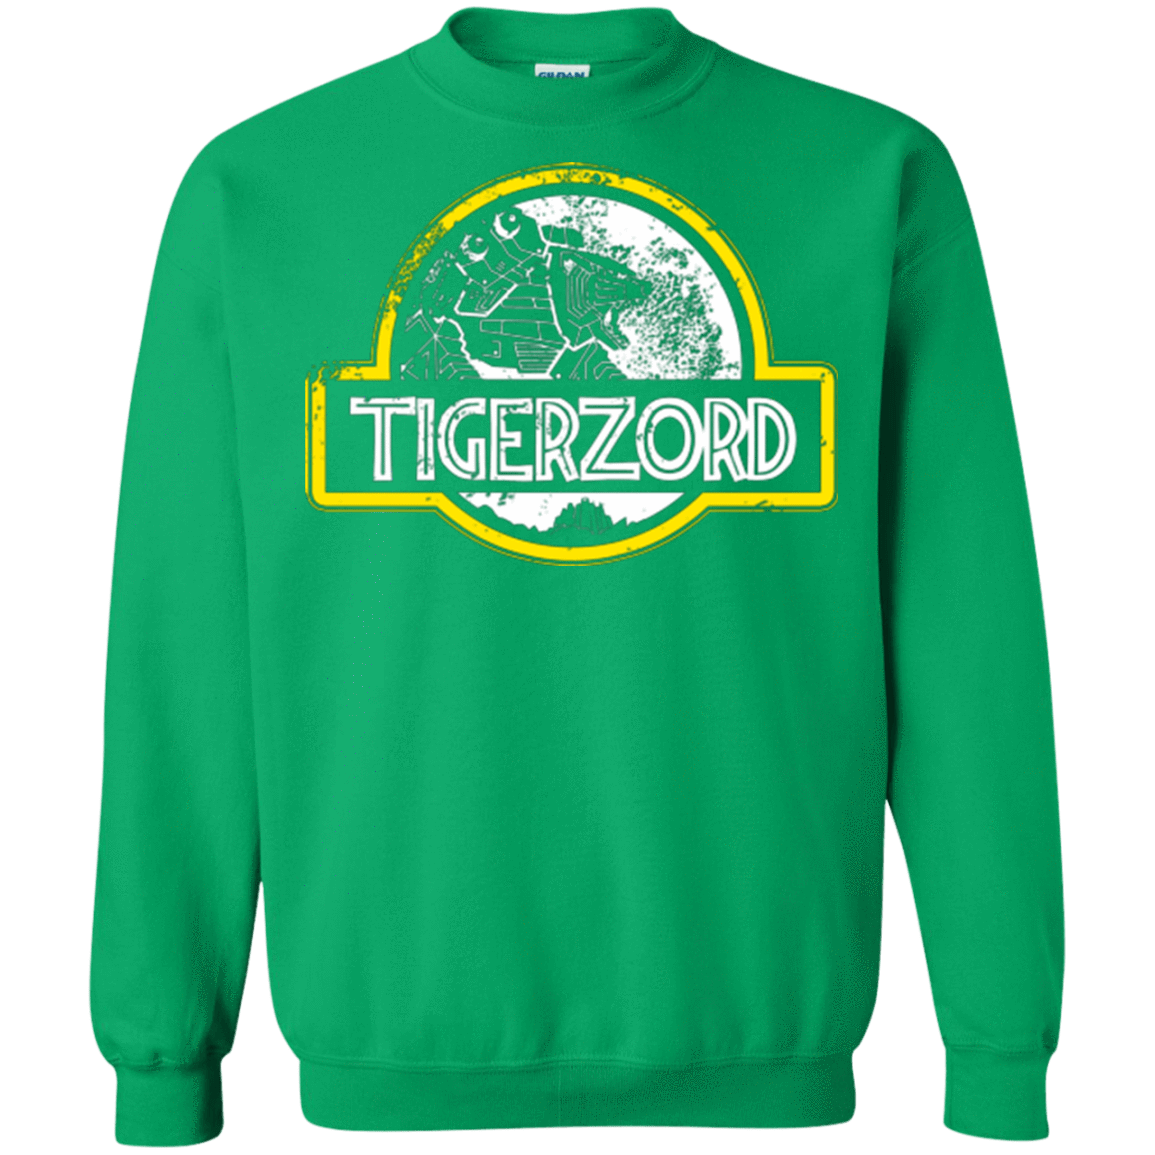 Sweatshirts Irish Green / Small Jurassic Power White Crewneck Sweatshirt